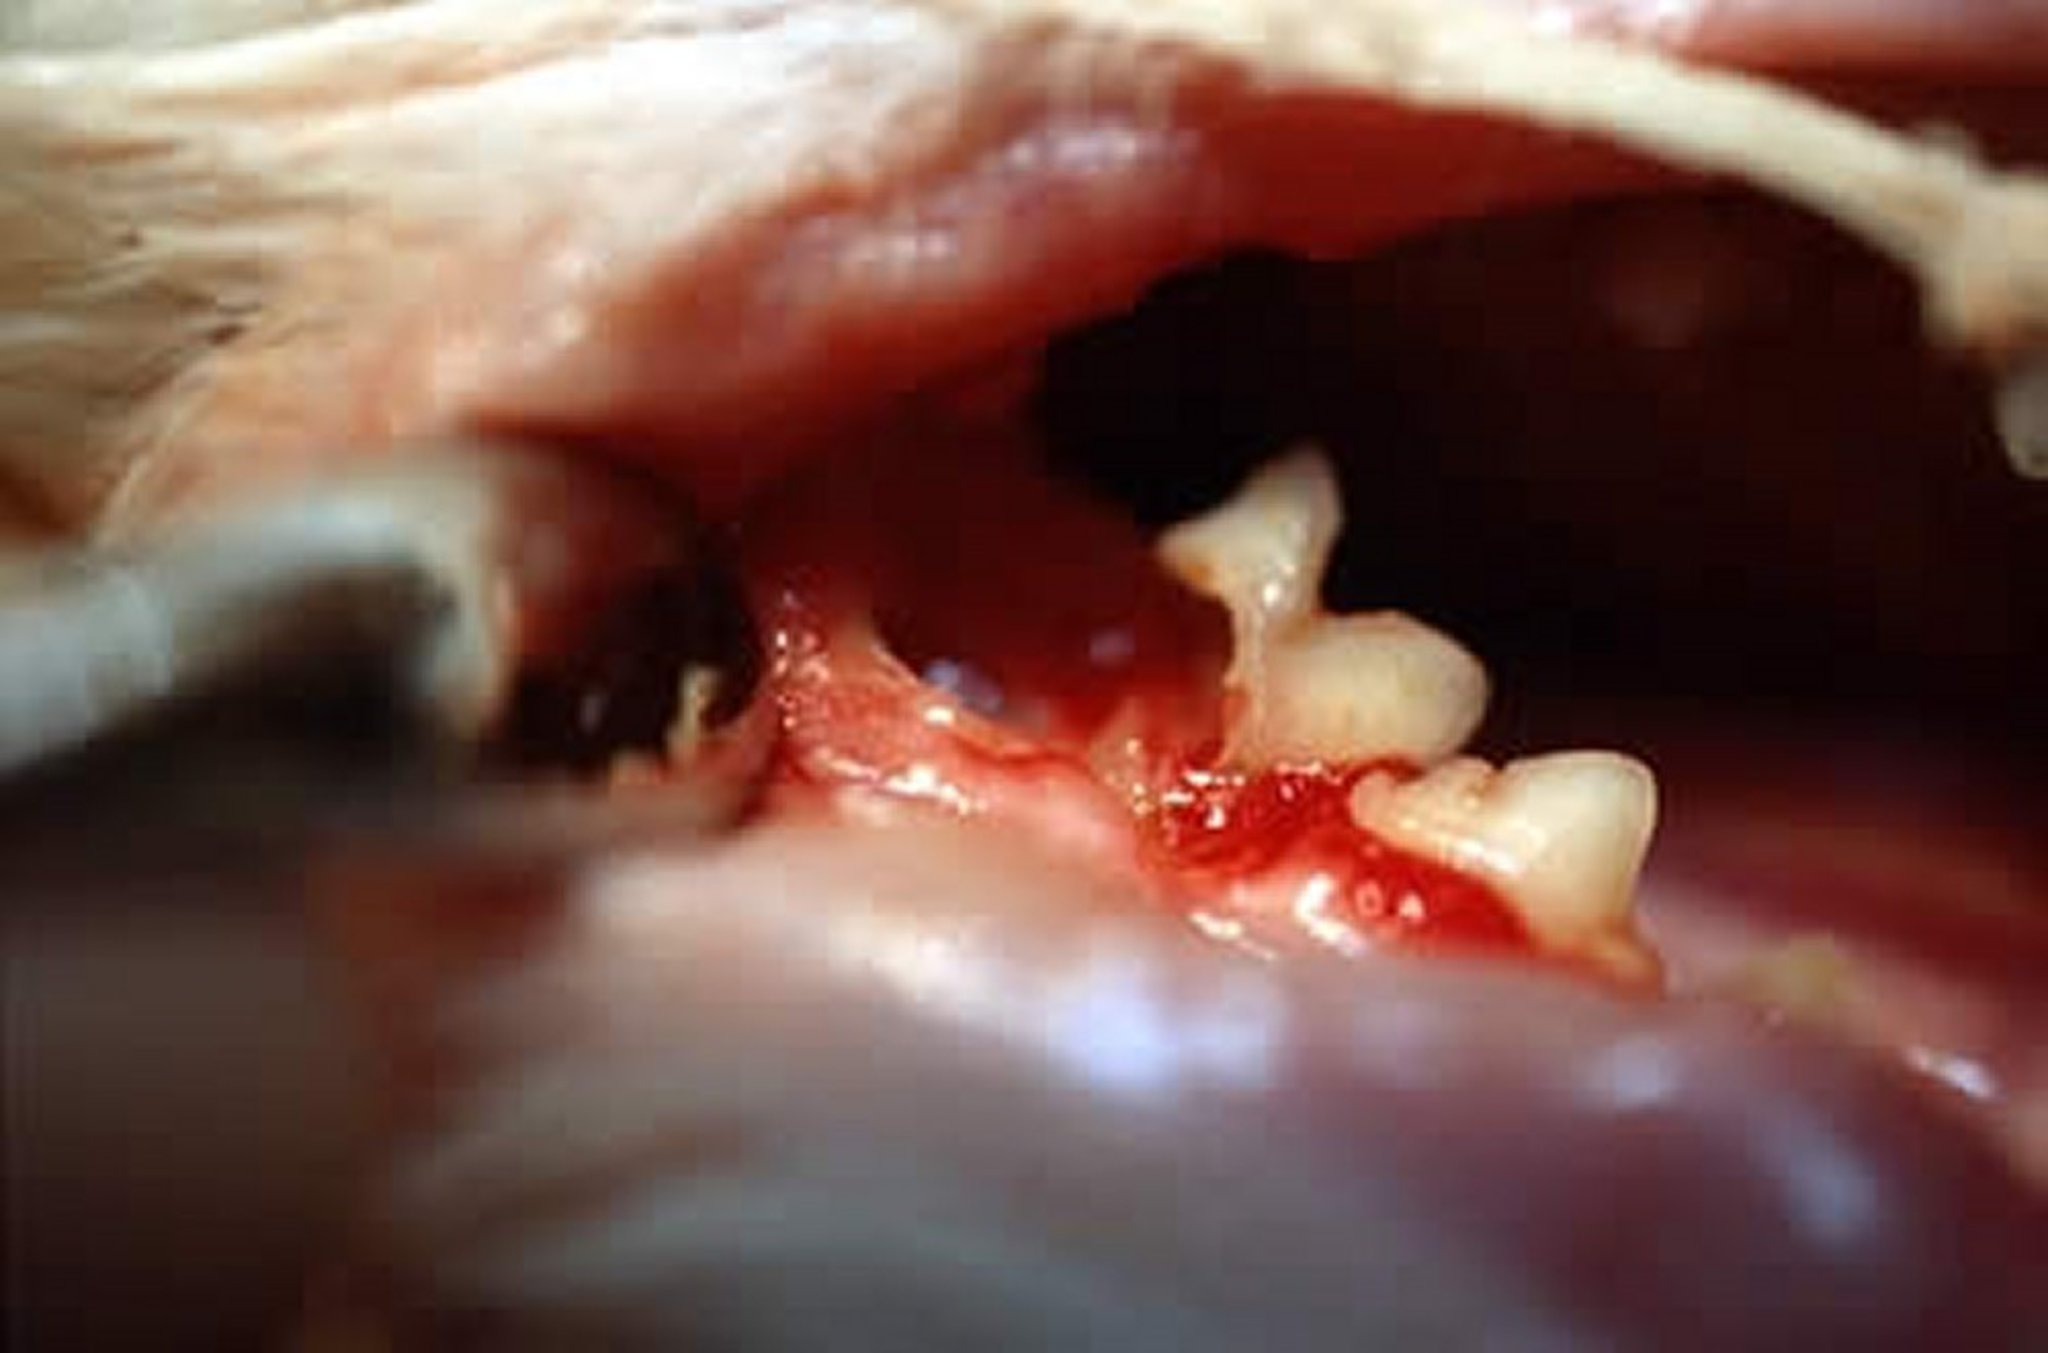 Resorptive lesions (teeth), cat